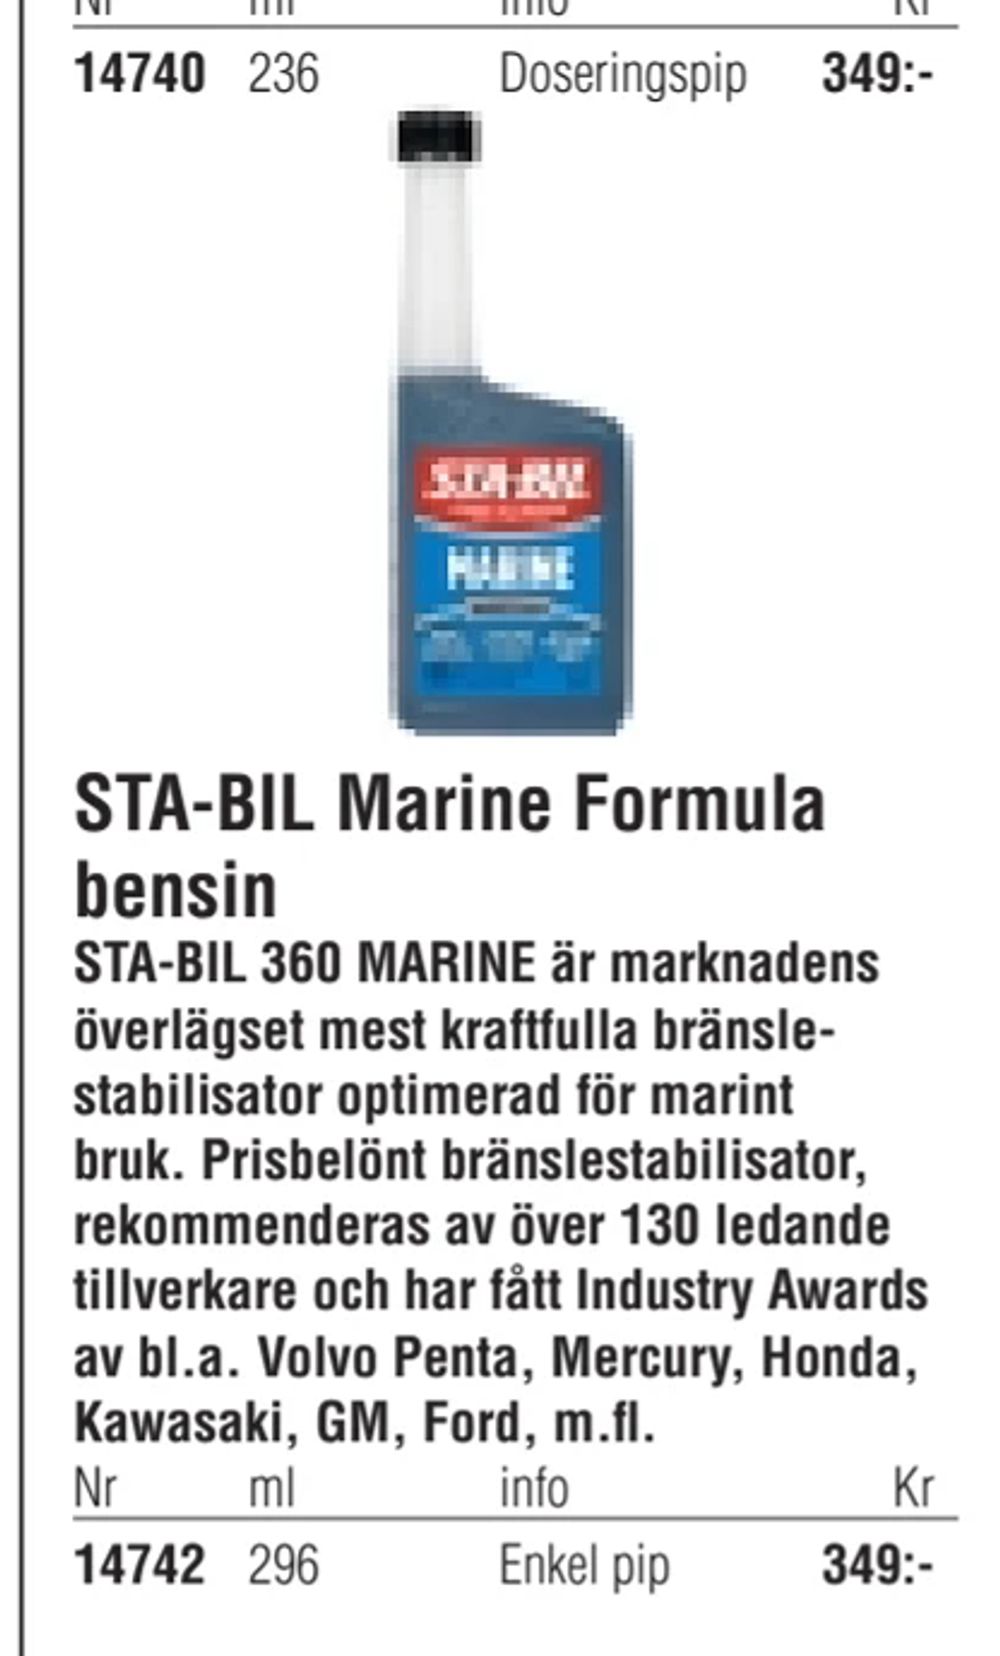 Erbjudanden på STA-BIL Marine Formula bensin från Erlandsons Brygga för 349 kr